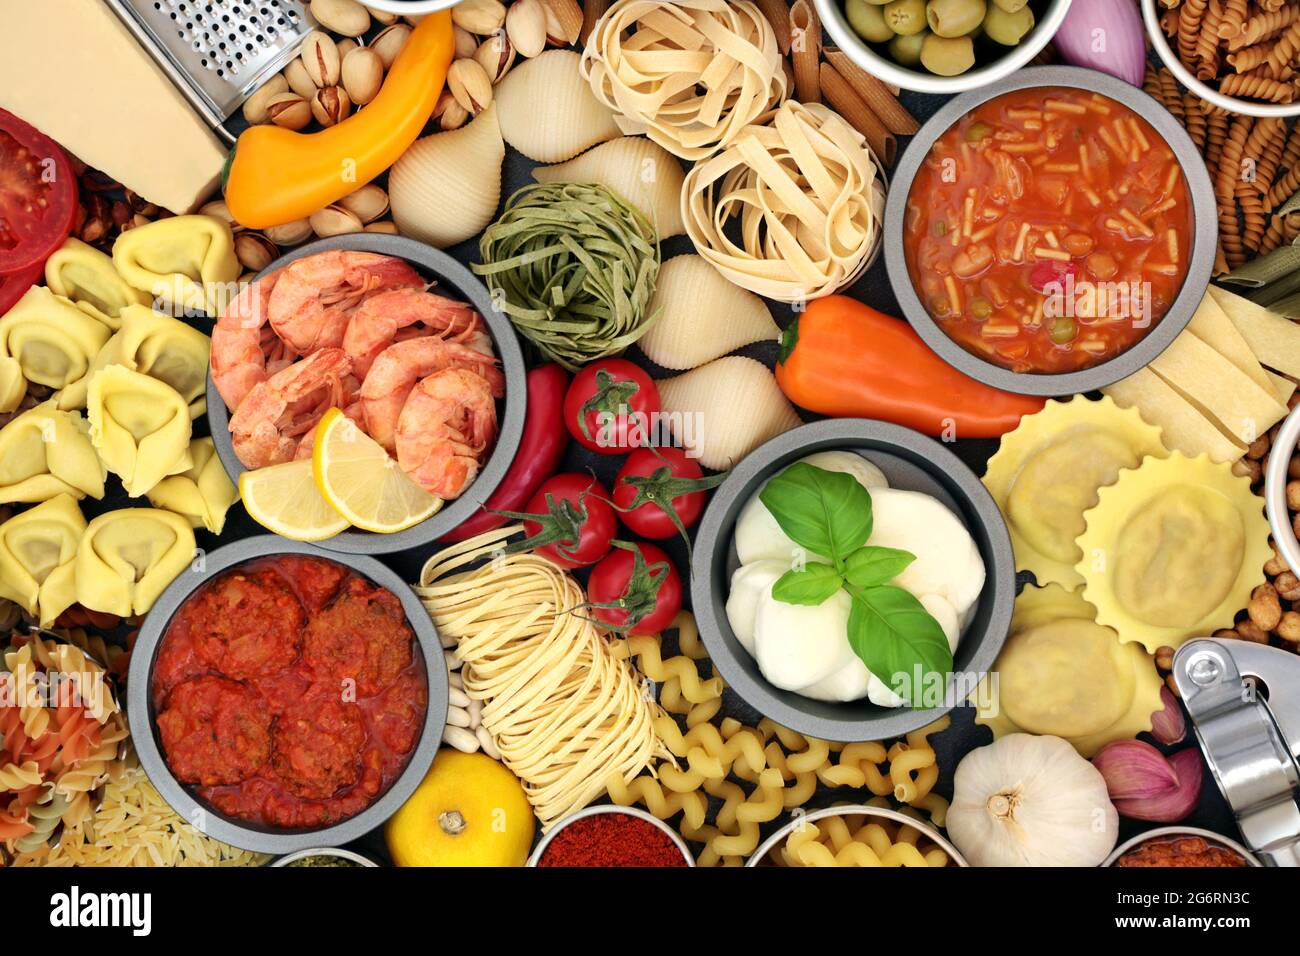 Cibo sano italiano per una dieta equilibrata ad alto contenuto di antiossidanti, antocianine, fibre, licopene, omega 3 e proteine. Foto Stock